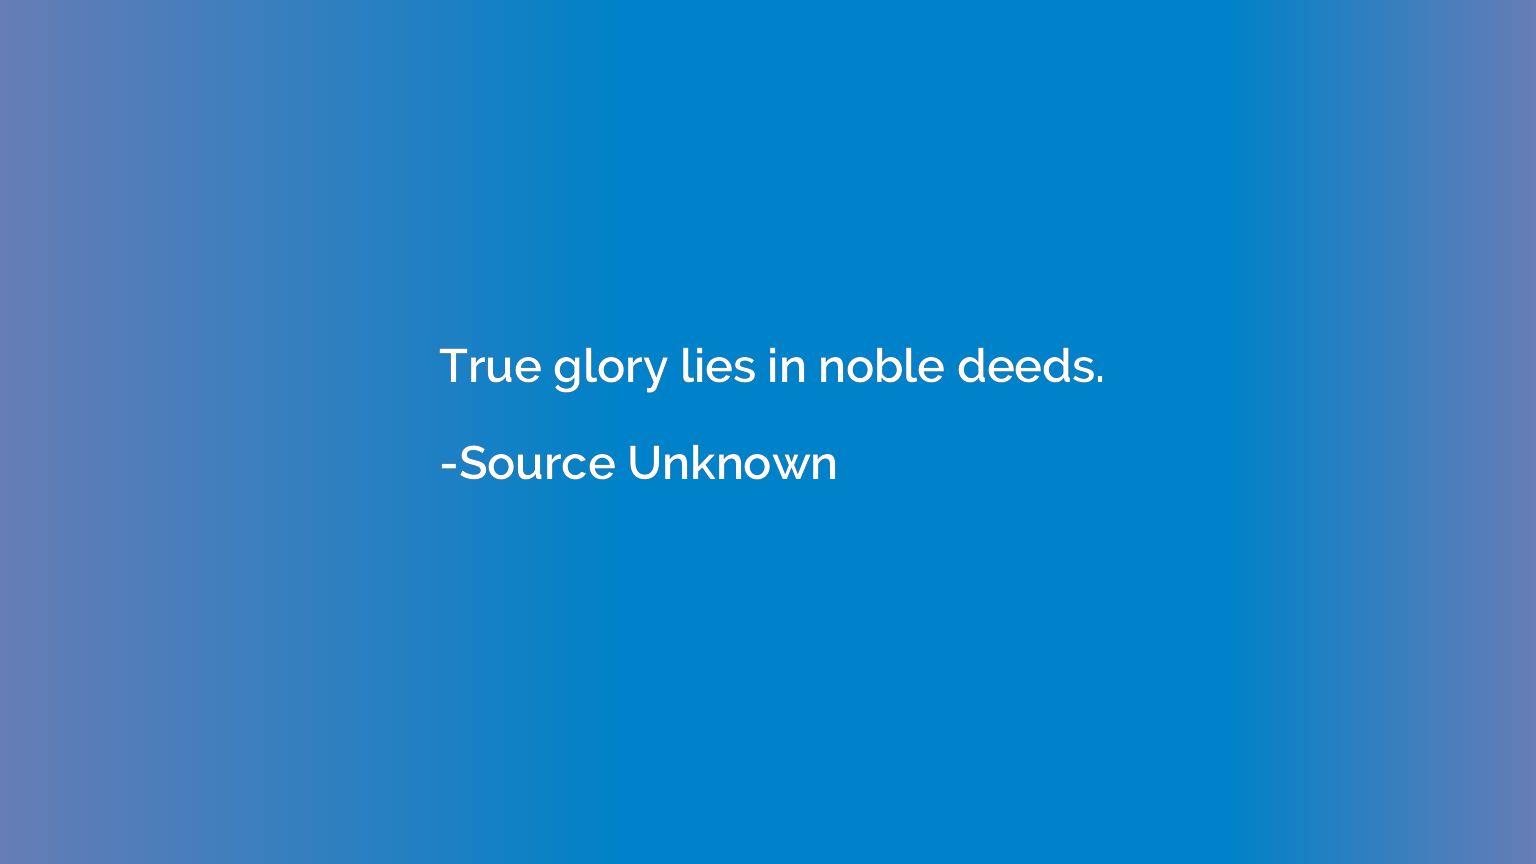 True glory lies in noble deeds.